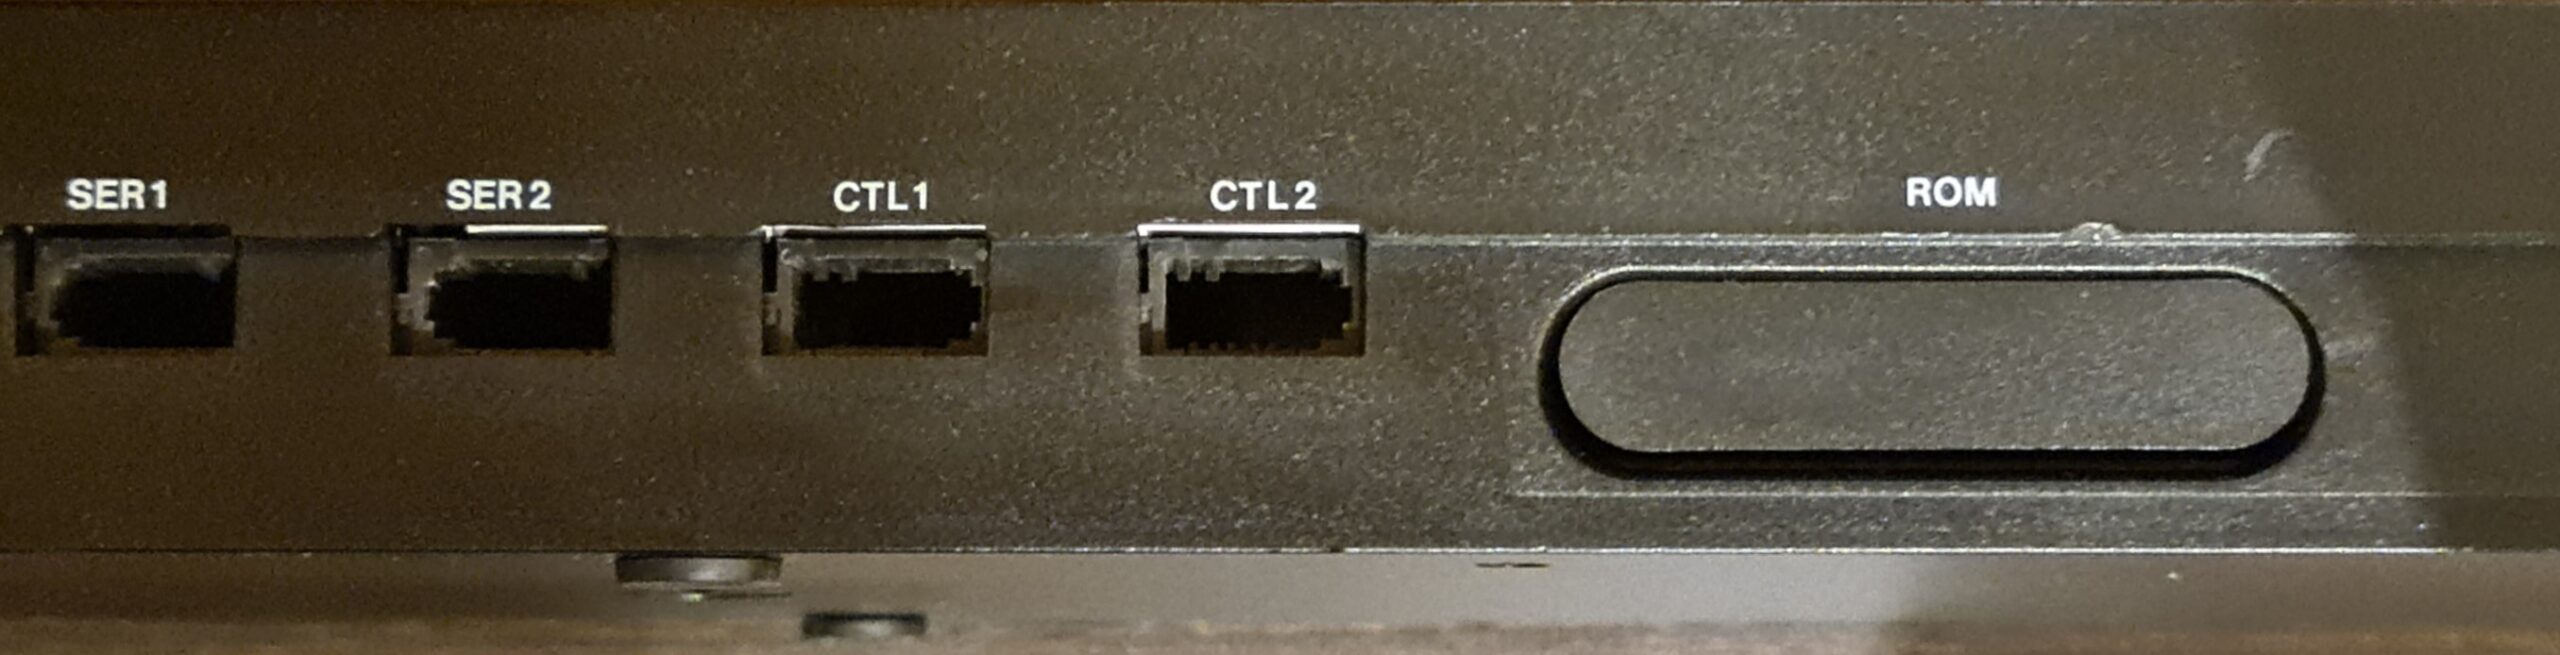 Sinclair QL - D11-036754-QLBackPorts1